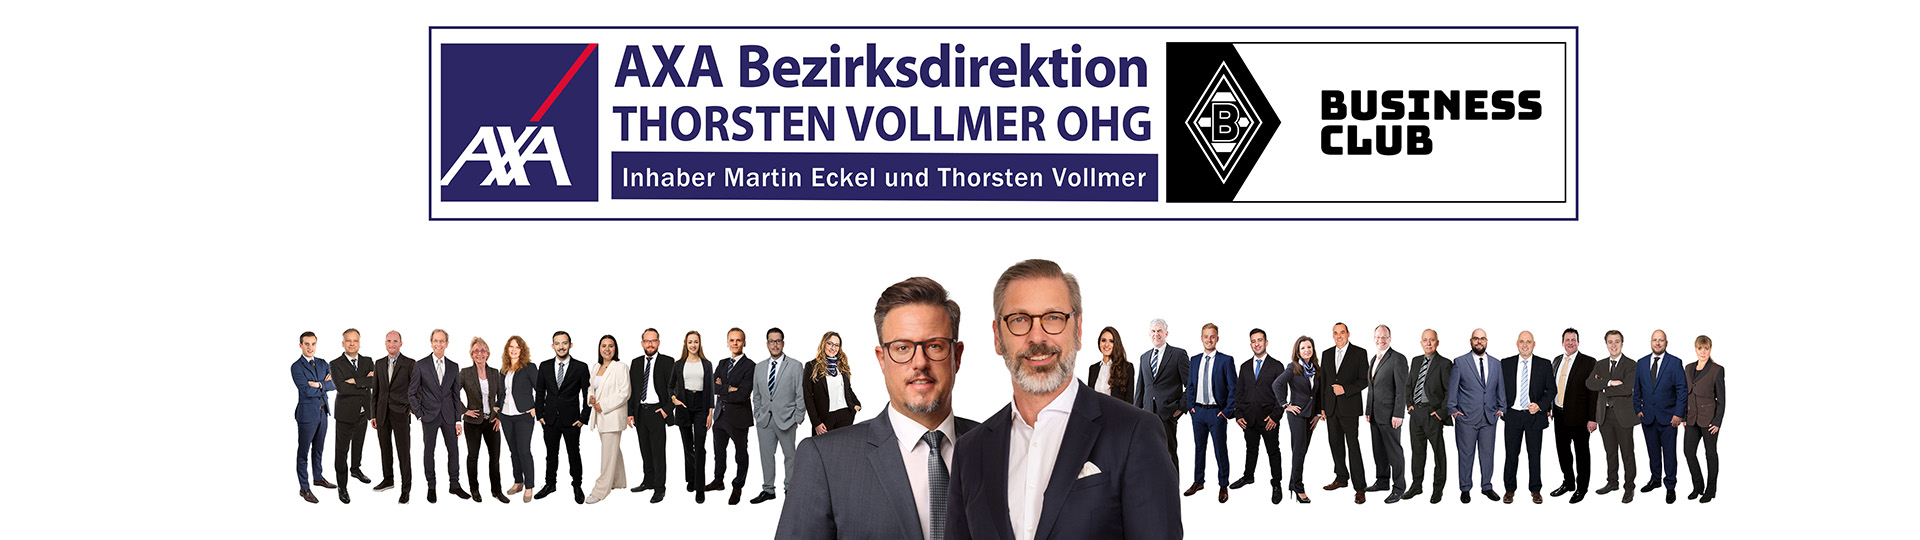 AXA Bezirksdirektion in Göttingen Thorsten Vollmer OHG aus Göttingen